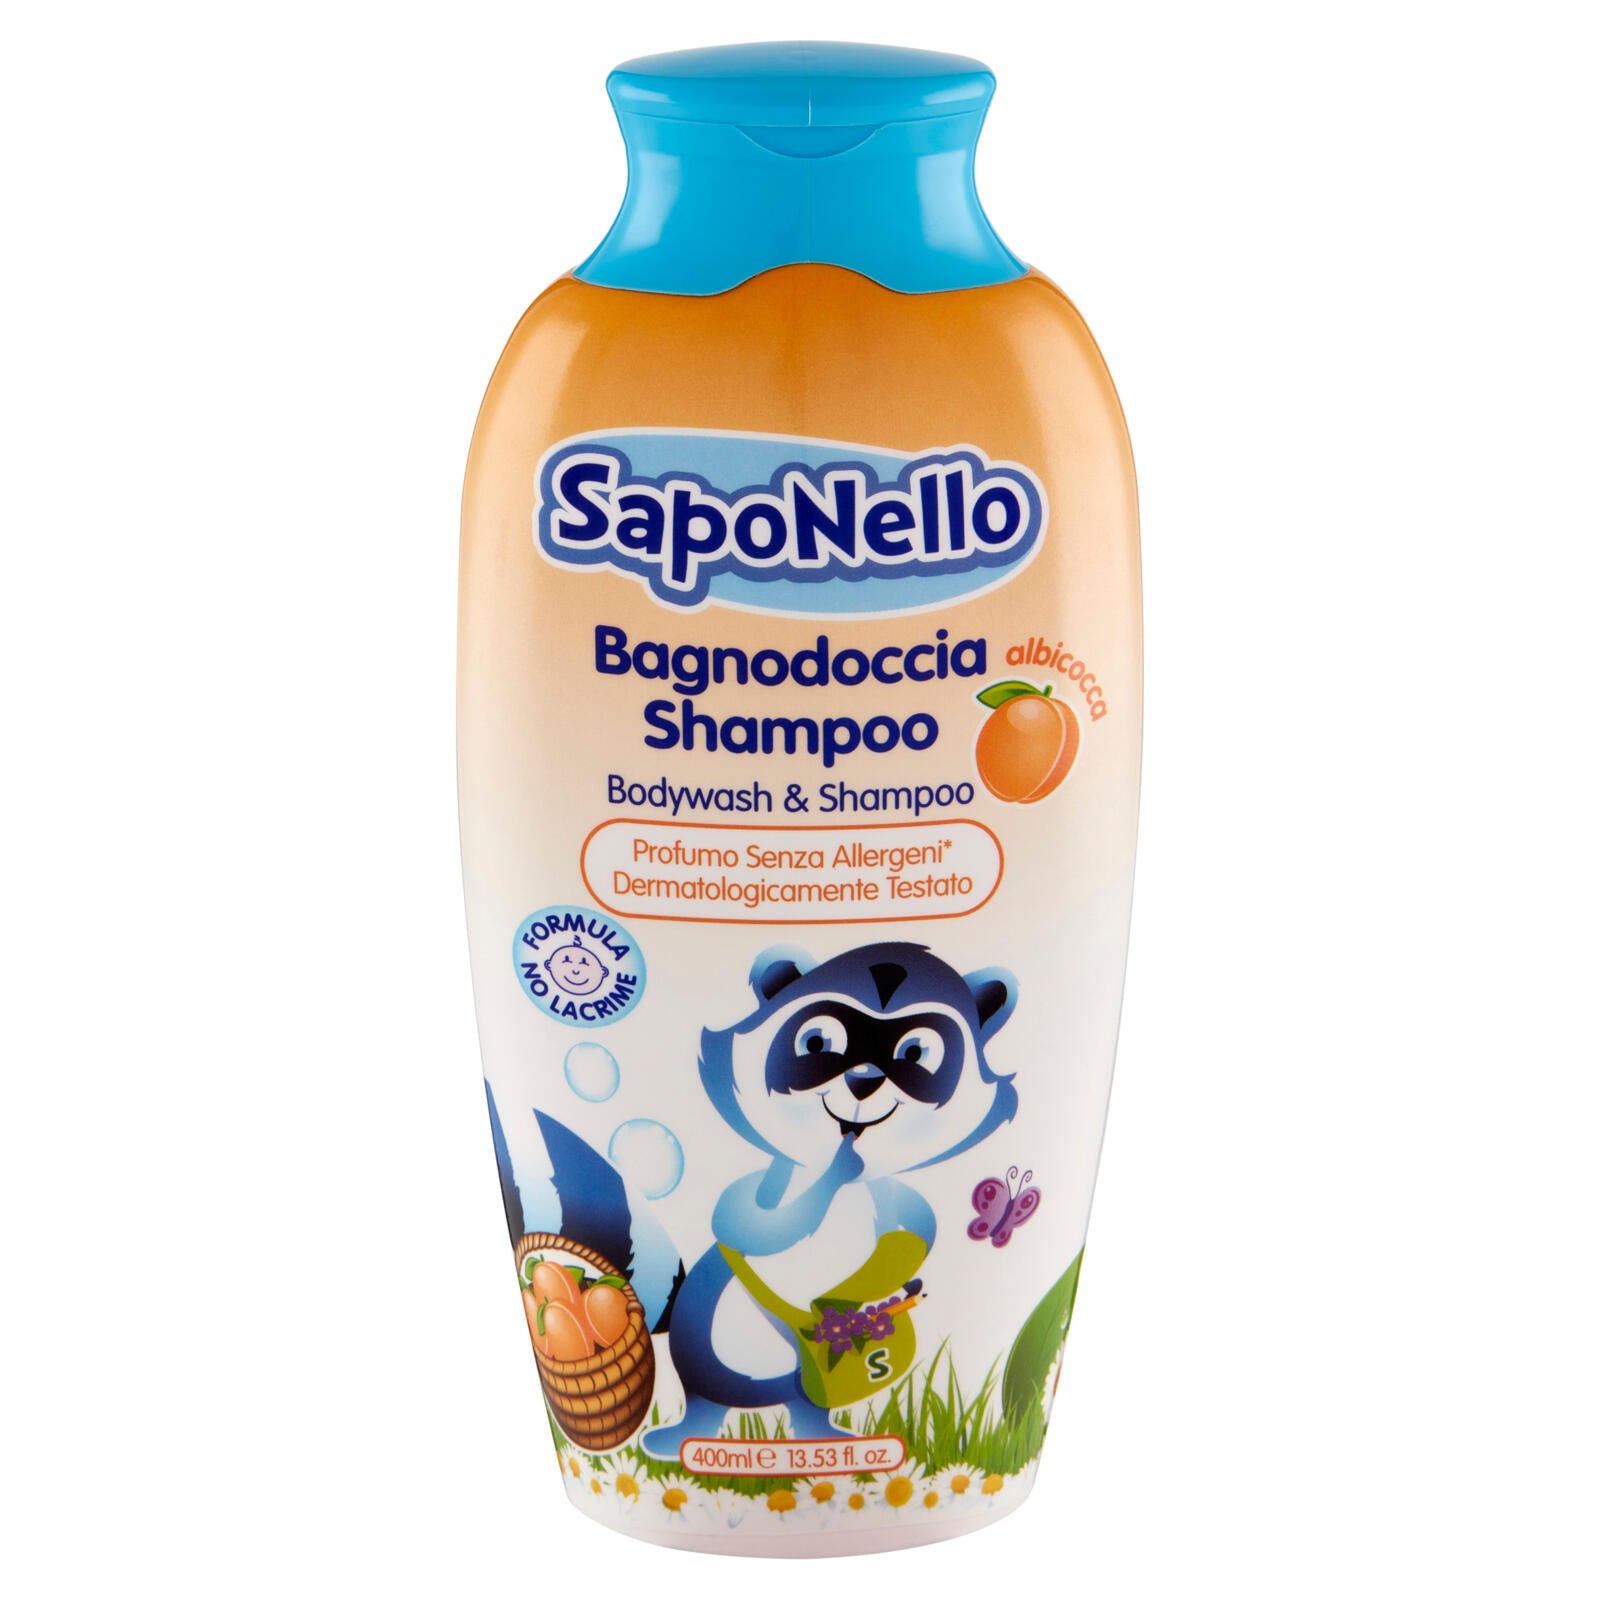 SapoNello Bagnodoccia Shampoo albicocca 400 ml